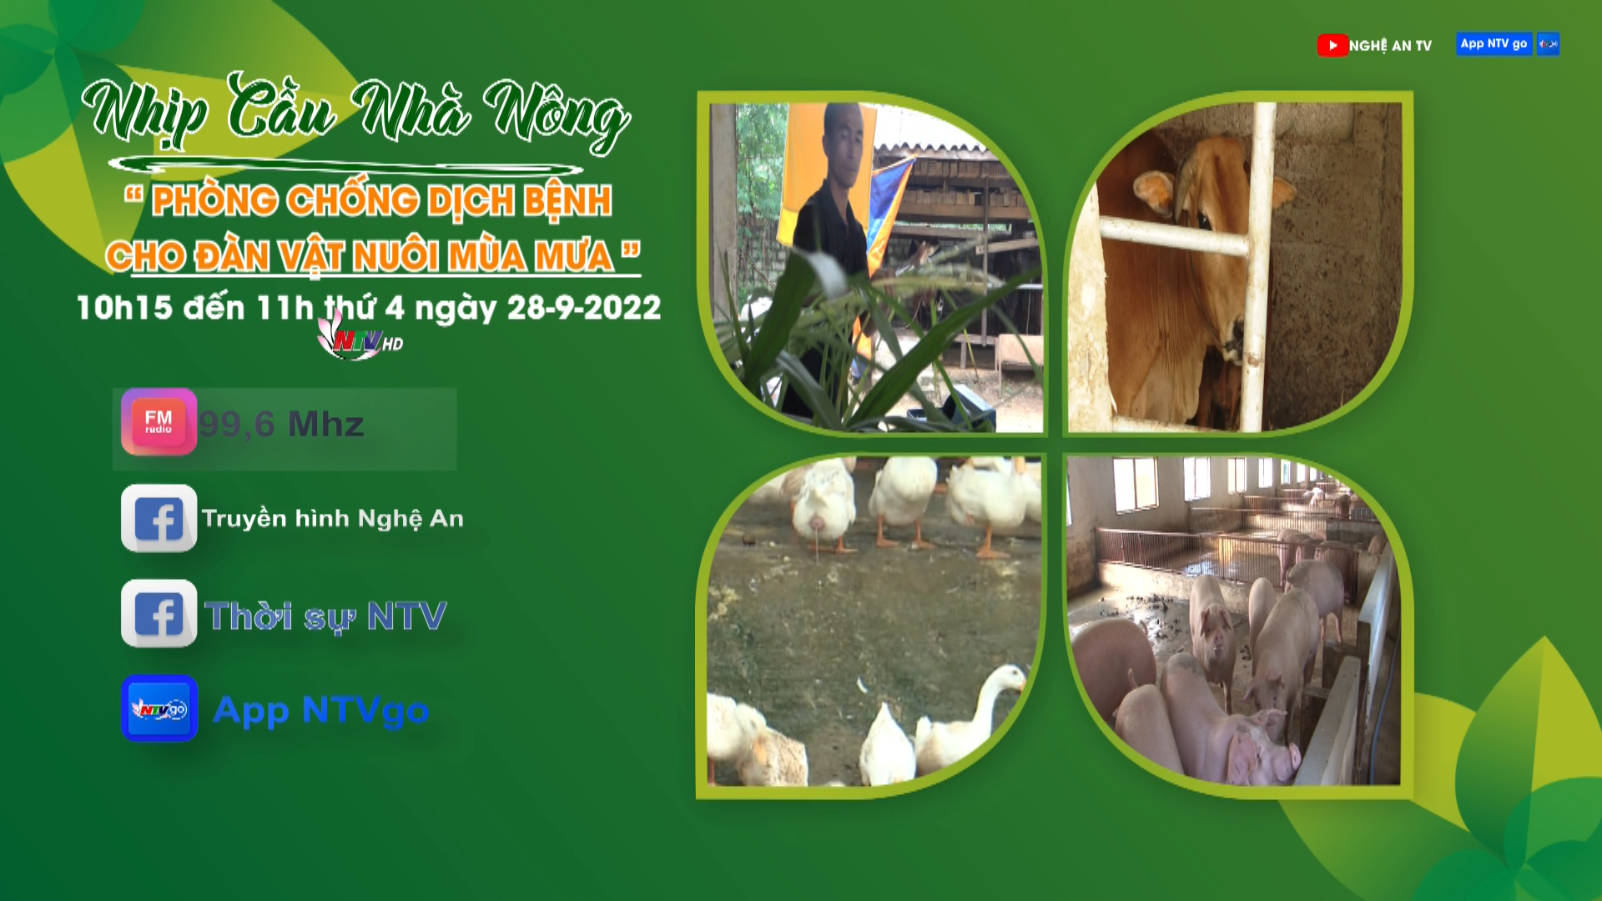 Nhịp cầu nhà nông: Phòng chống dịch bệnh đàn vật nuôi mùa mưa bão